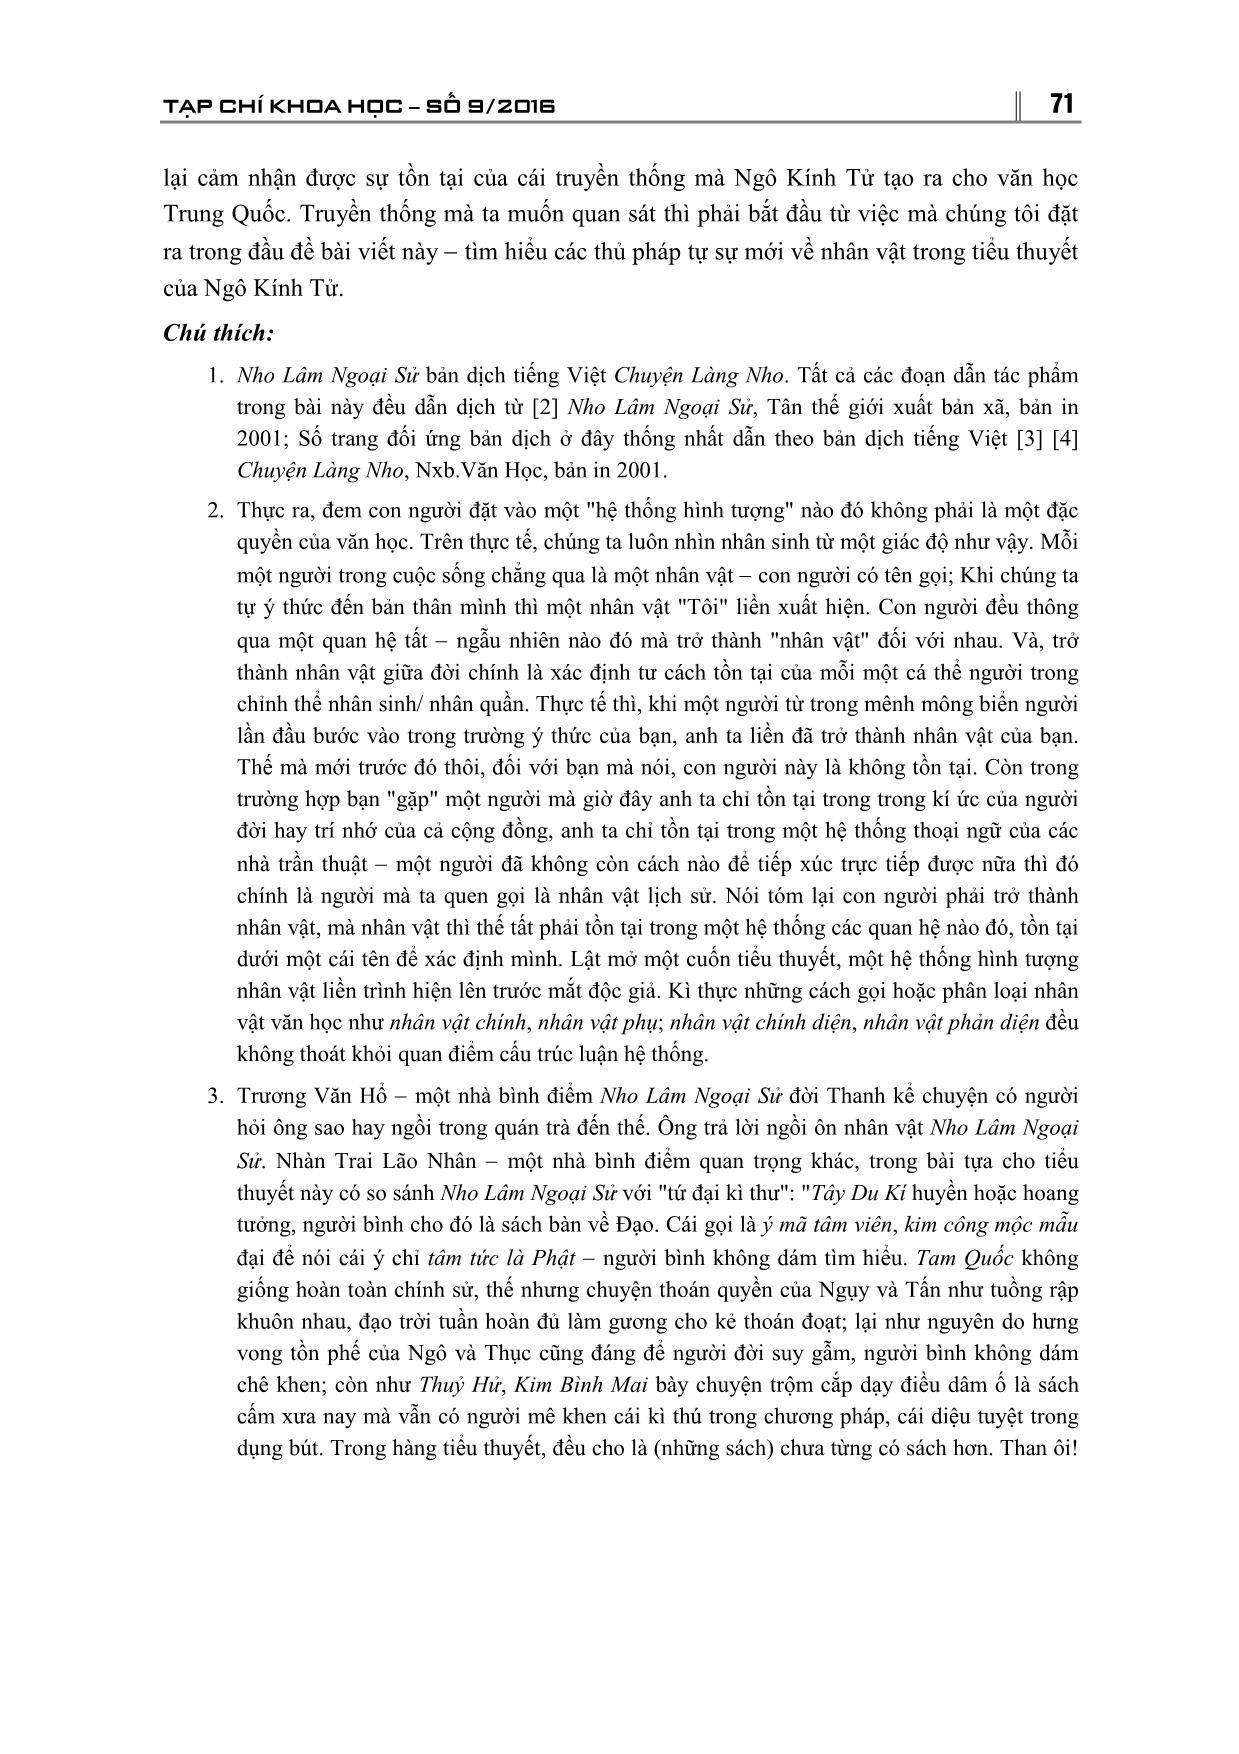 Thủ pháp tự sự mới về nhân vật của Nho Lâm Ngoại Sử và việc tái thức nhận chủ đề cuốn tiểu thuyết trang 10